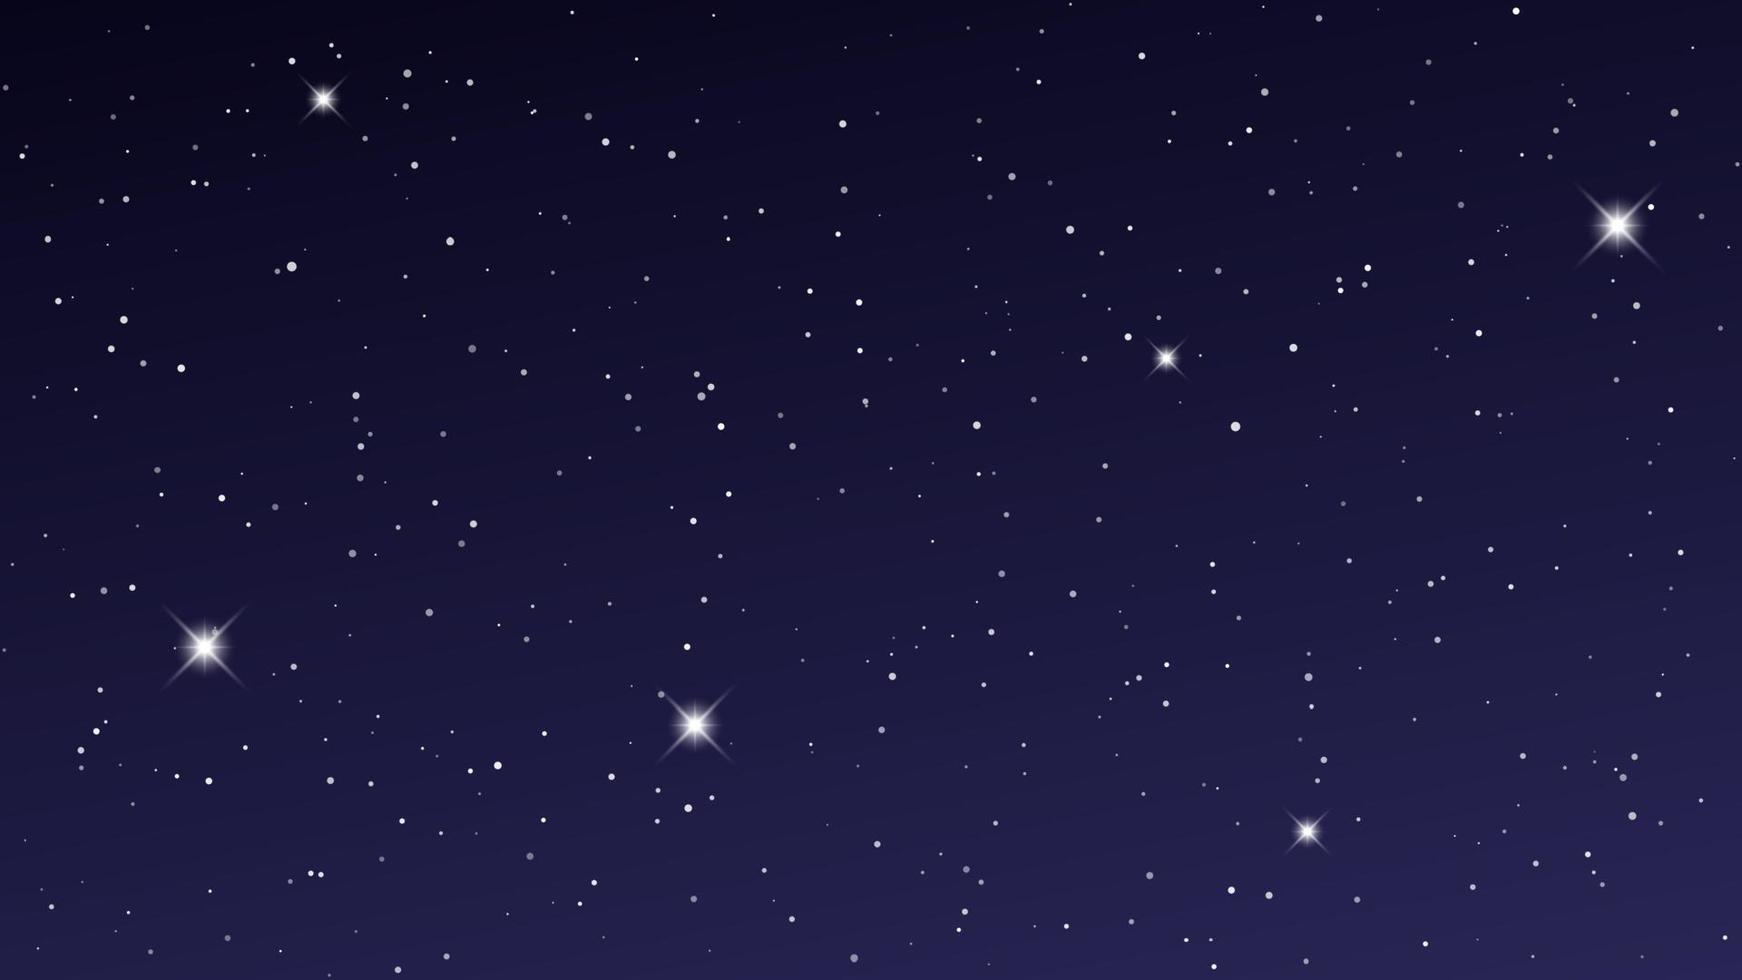 nacht lucht met veel sterren. abstract natuur achtergrond met sterrenstof in diep universum. vector illustratie.